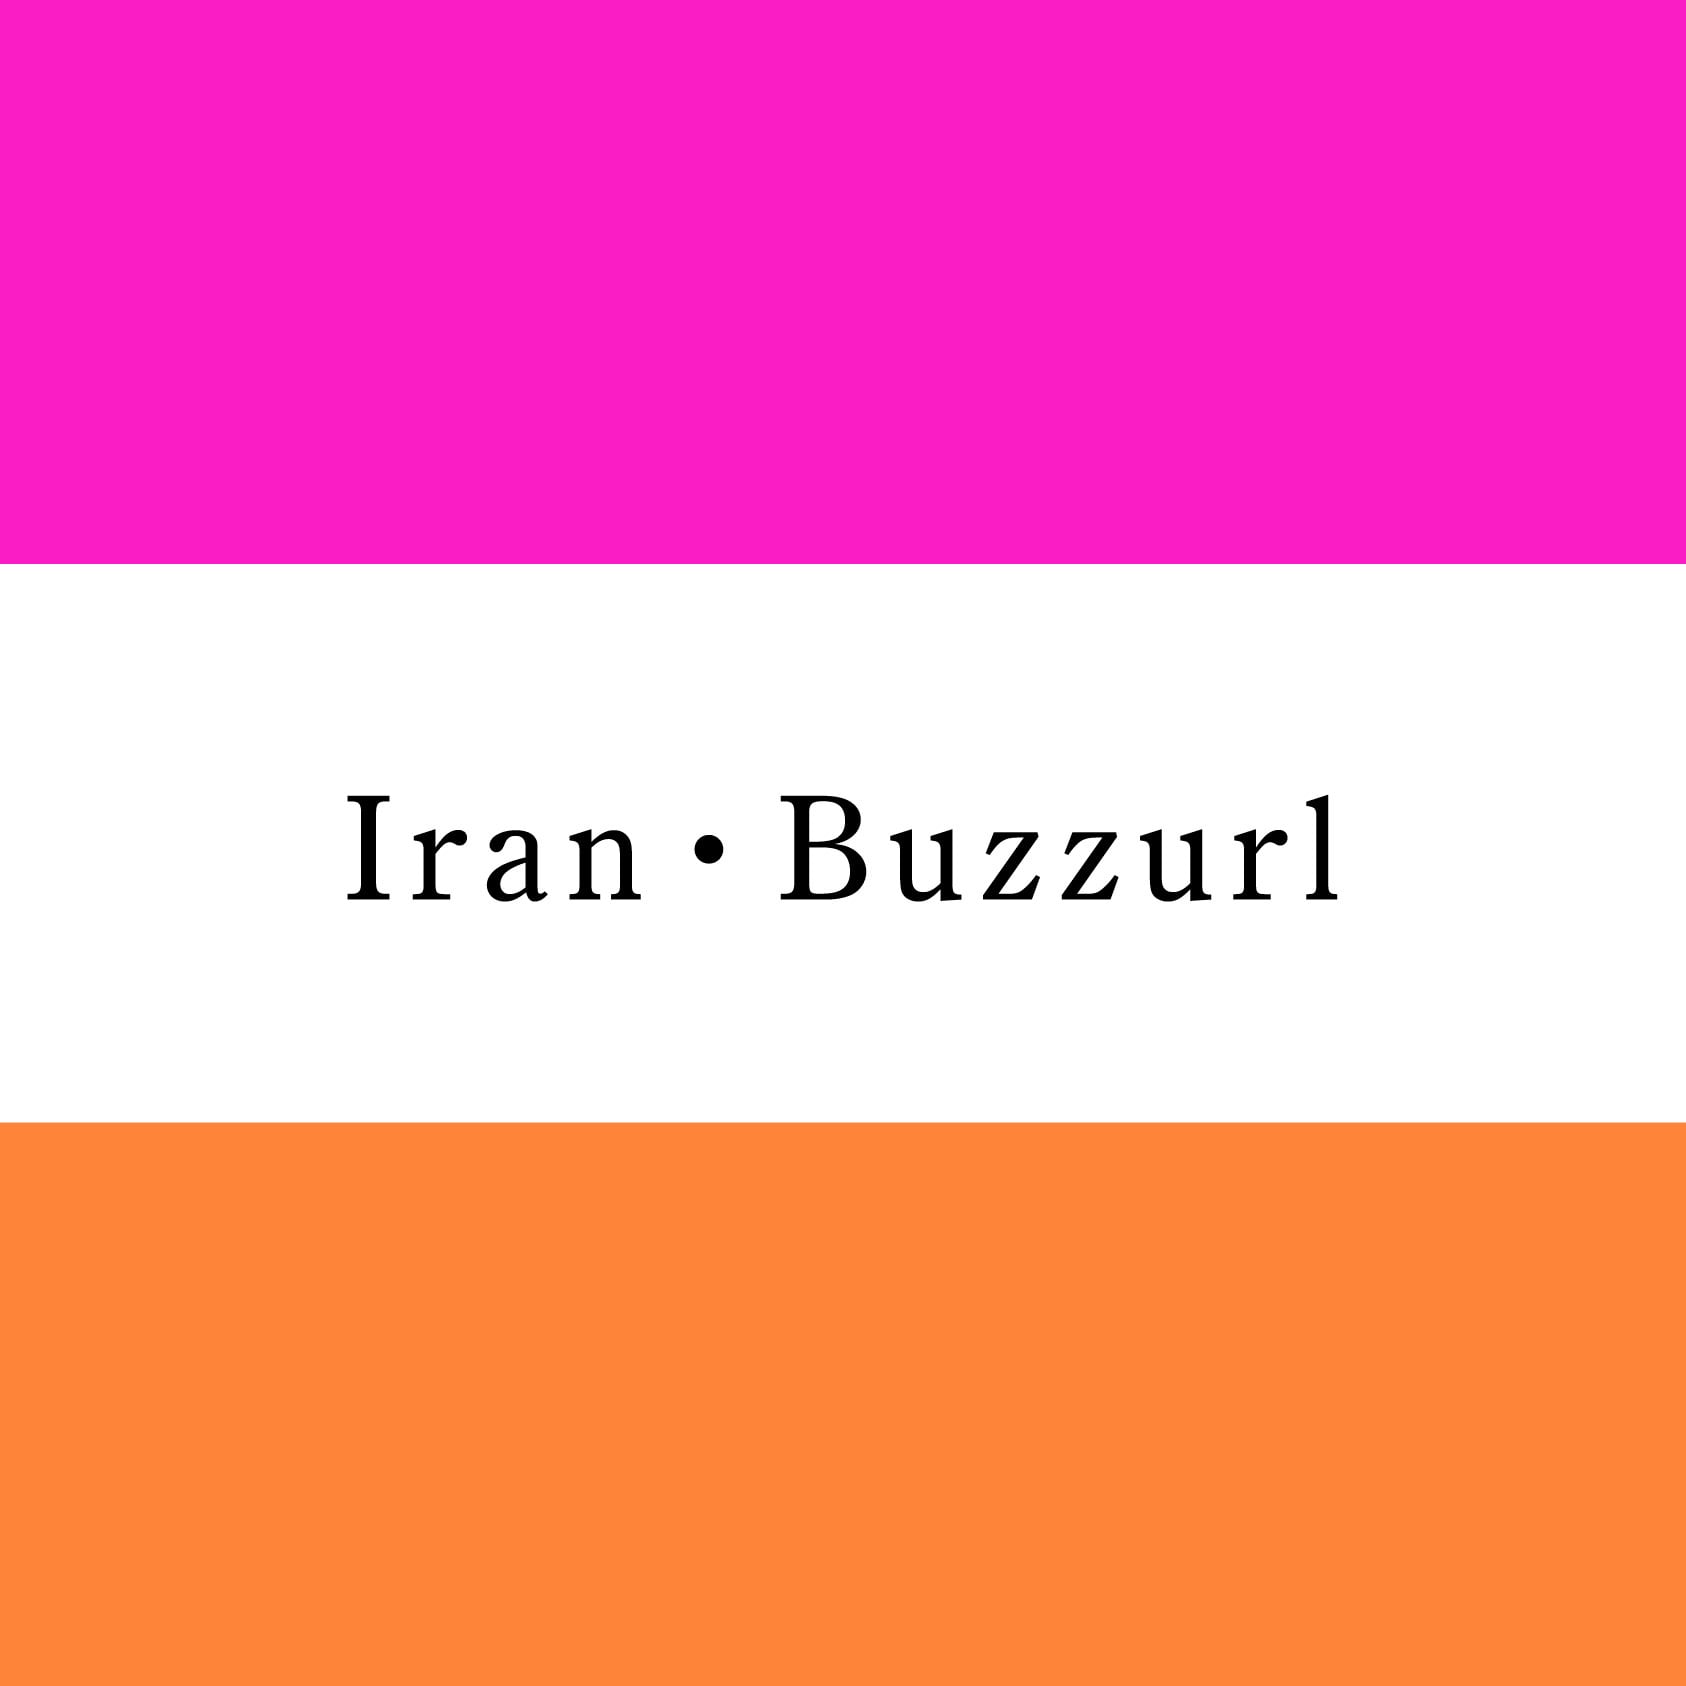 Iran・buzzurl 【イラン・バザール】